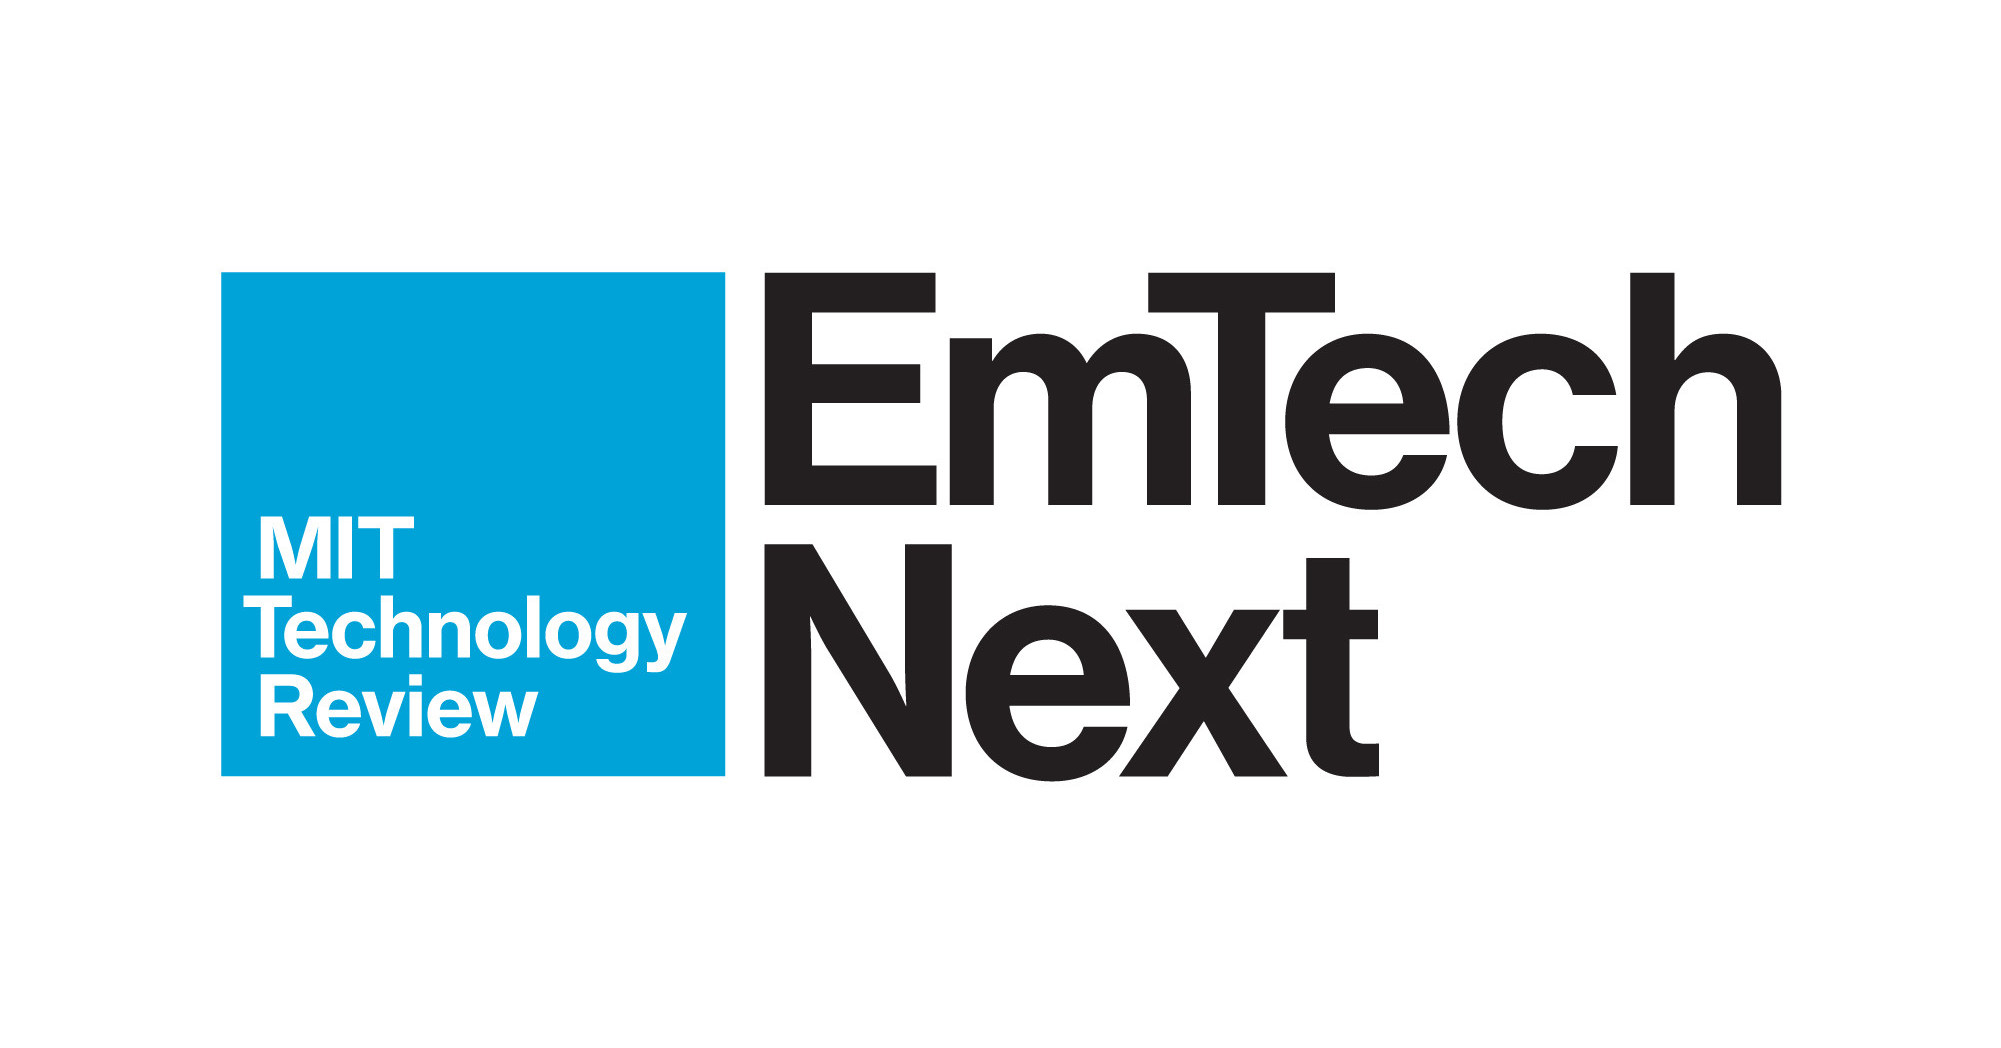 MIT Technology Review Announces 2020 EmTech Next Virtual Conference